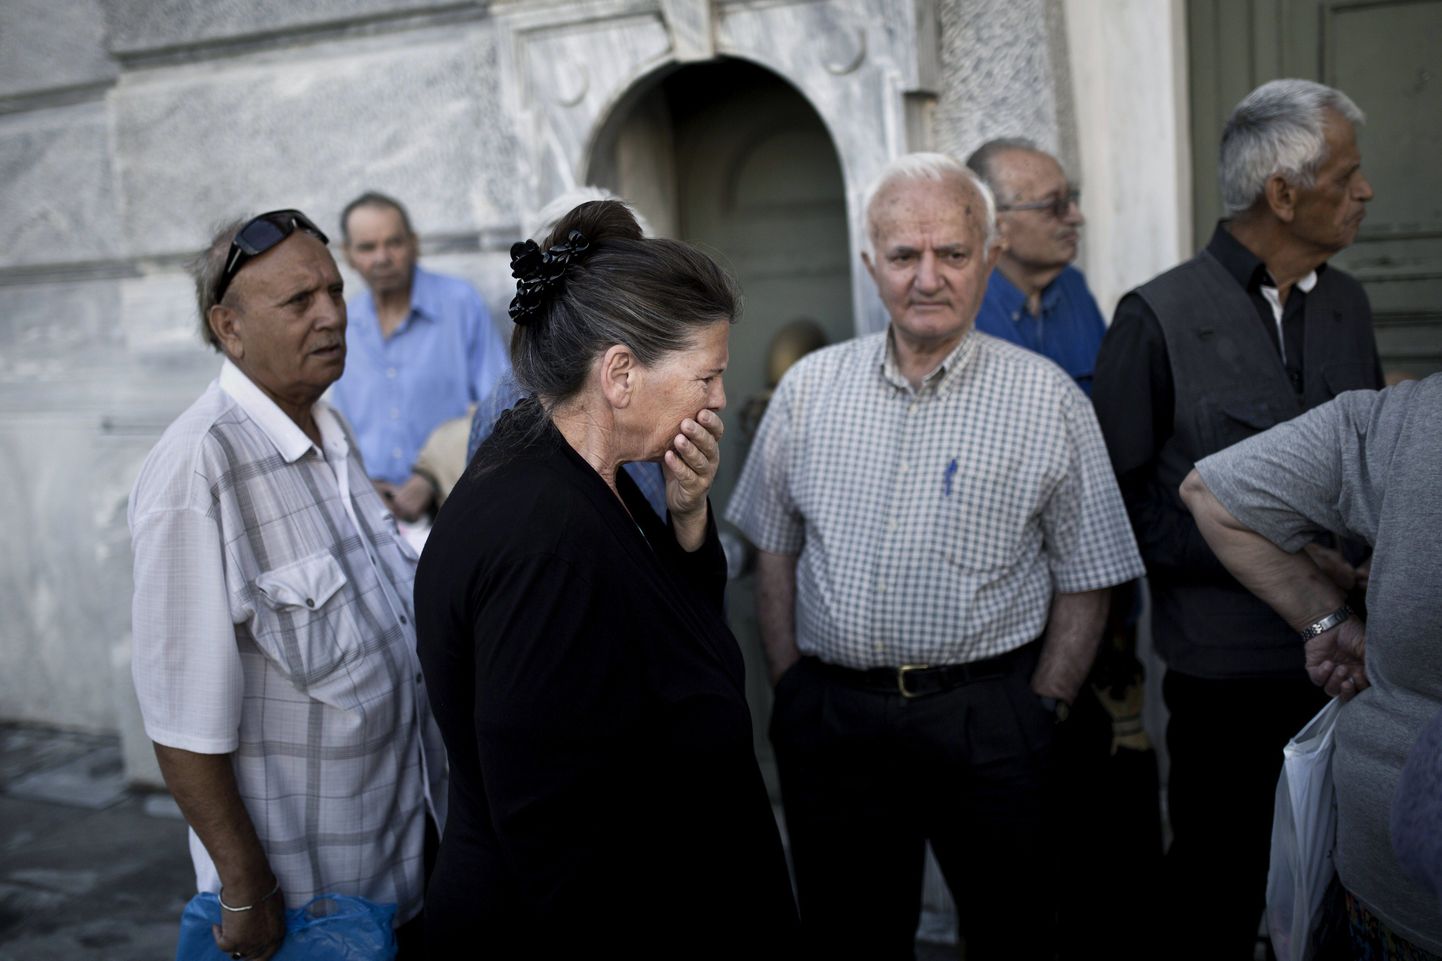 Kreeka pensionärid on kogunenud suletud pangauste taha, lootes oma pensionit kätte saada.